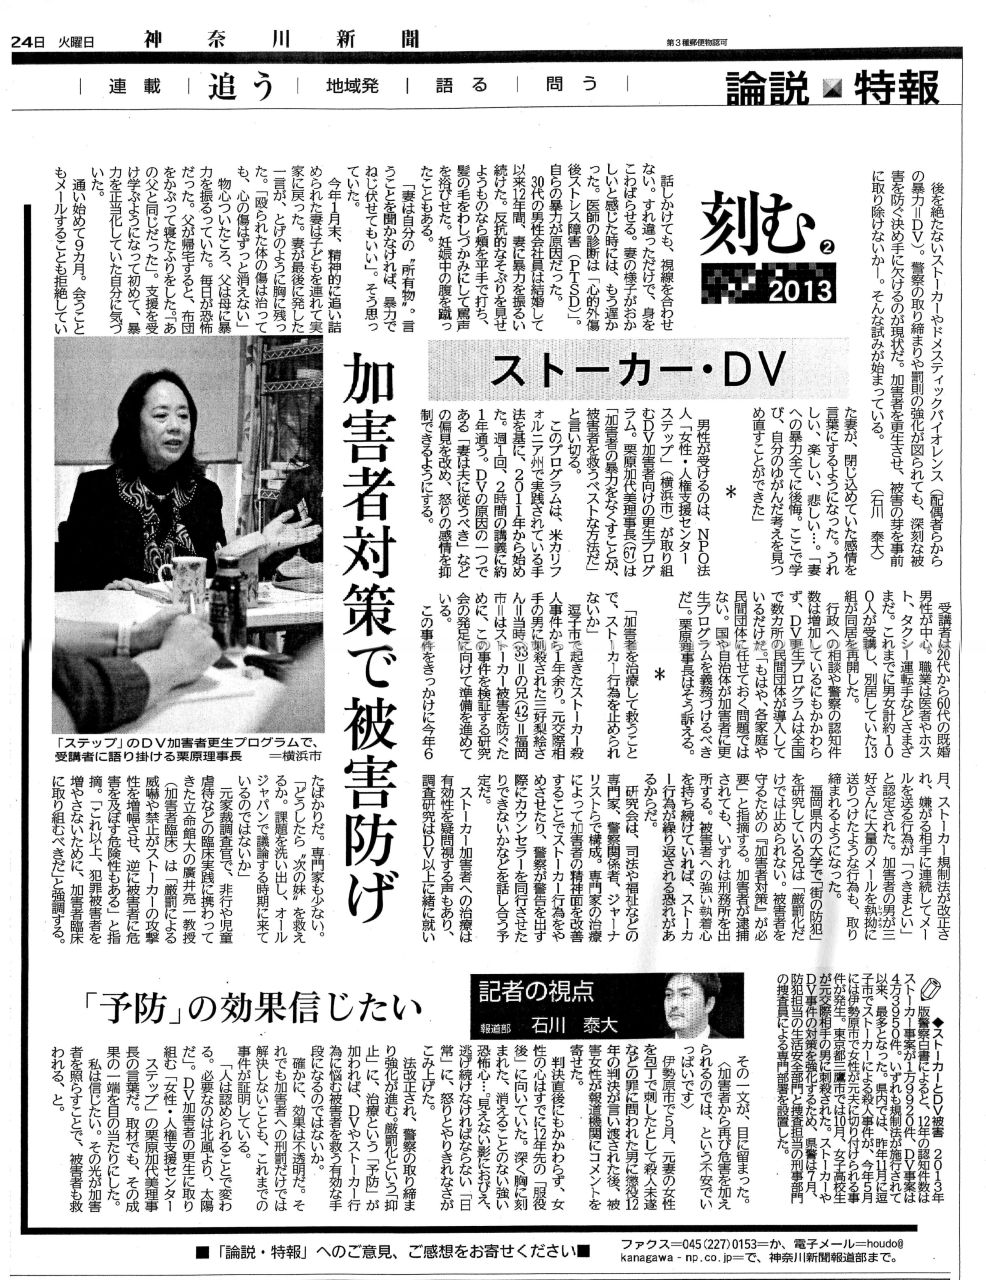 神奈川新聞、加害者対策を掲載_b0154492_1654622.jpg